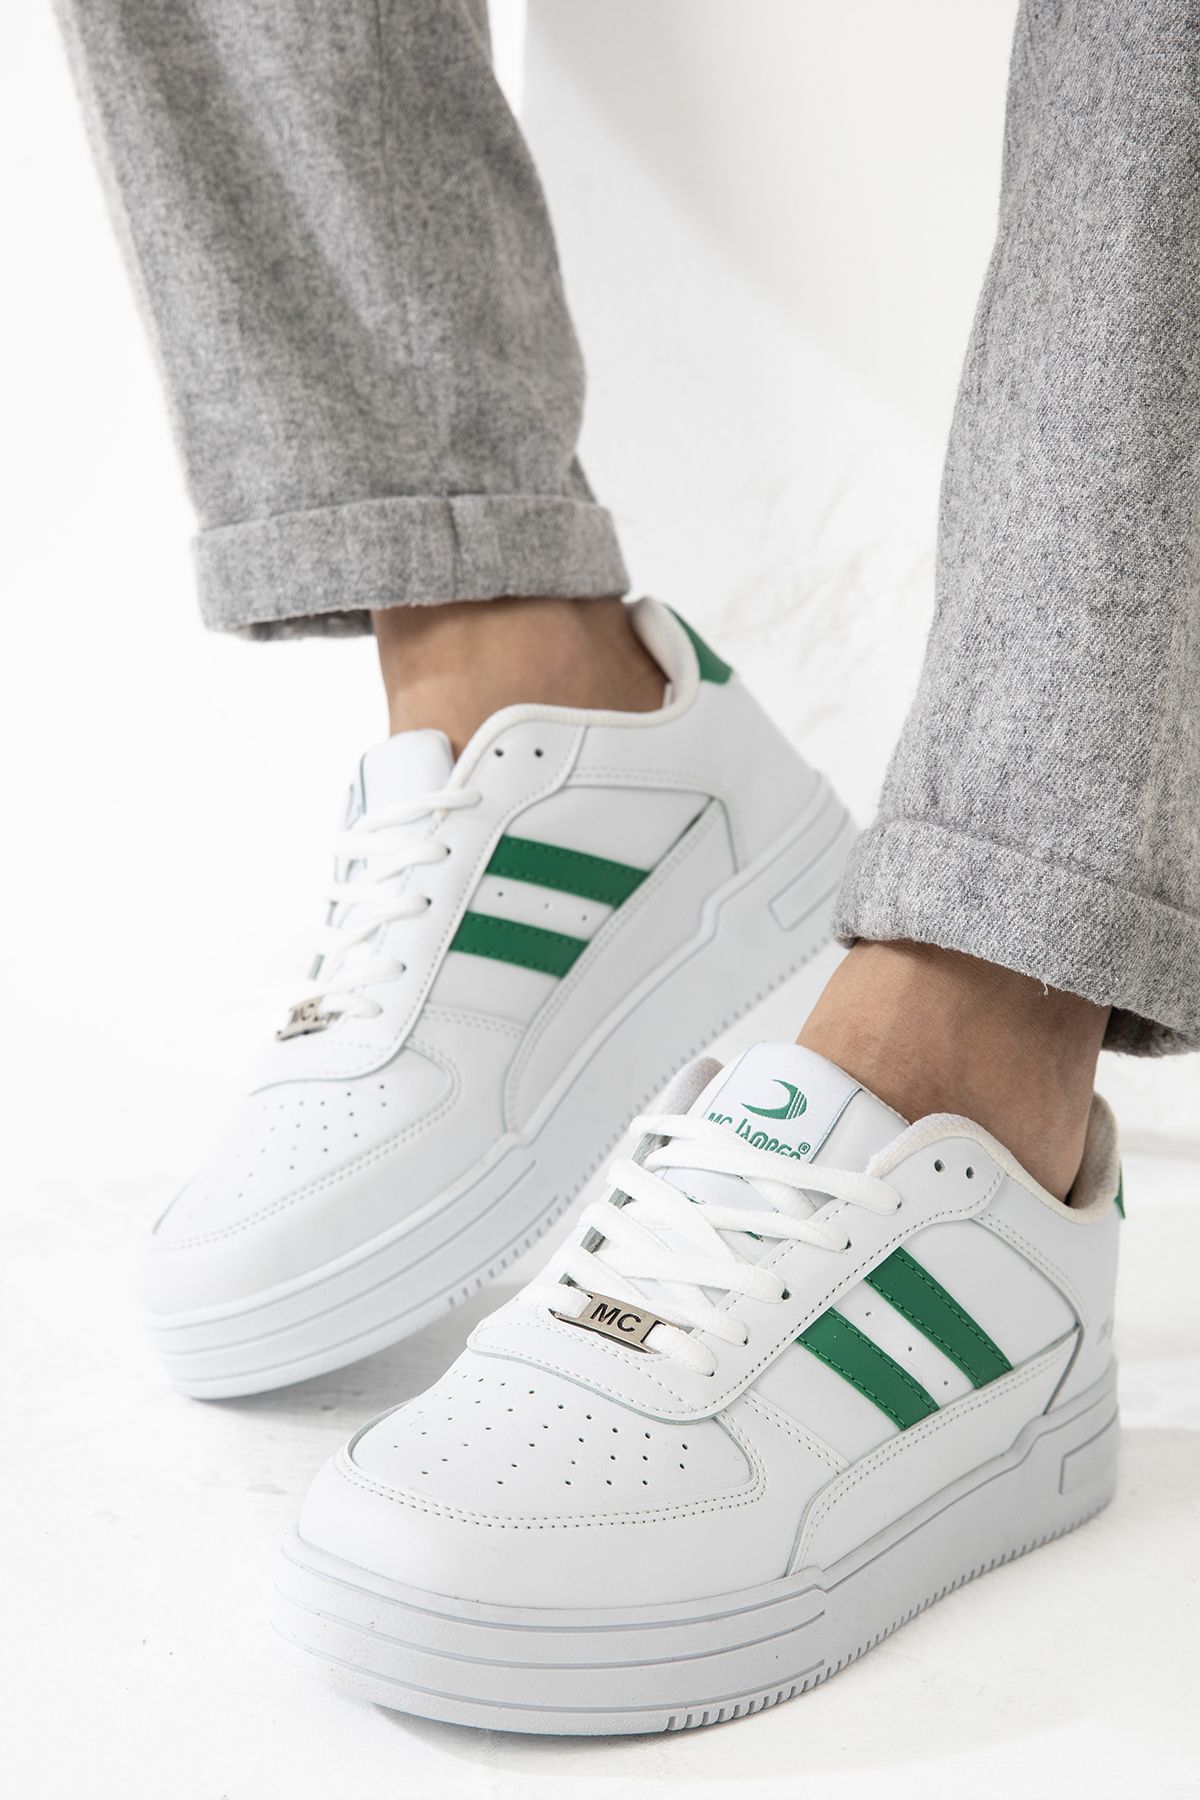 Tomsking Unisex Yeşil - Beyaz Sneaker Günlük Rahat Spor Ayakkabı